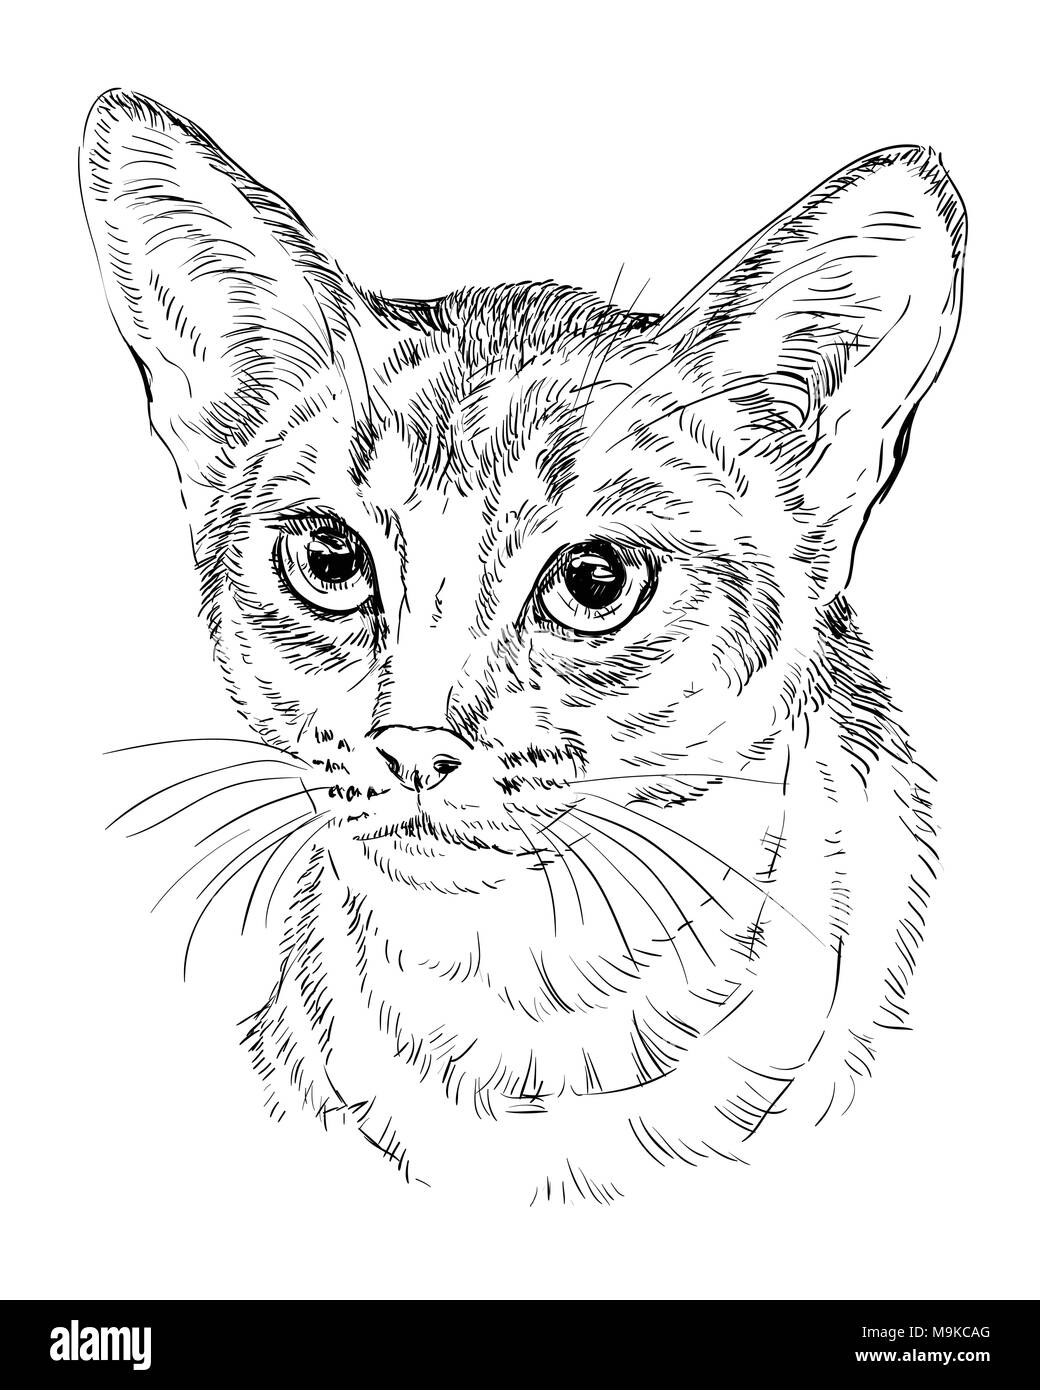 Contour vectoriel portrait monochrome de curieux chat abyssin en couleur noir. Dessin illustration isolé sur fond blanc Illustration de Vecteur